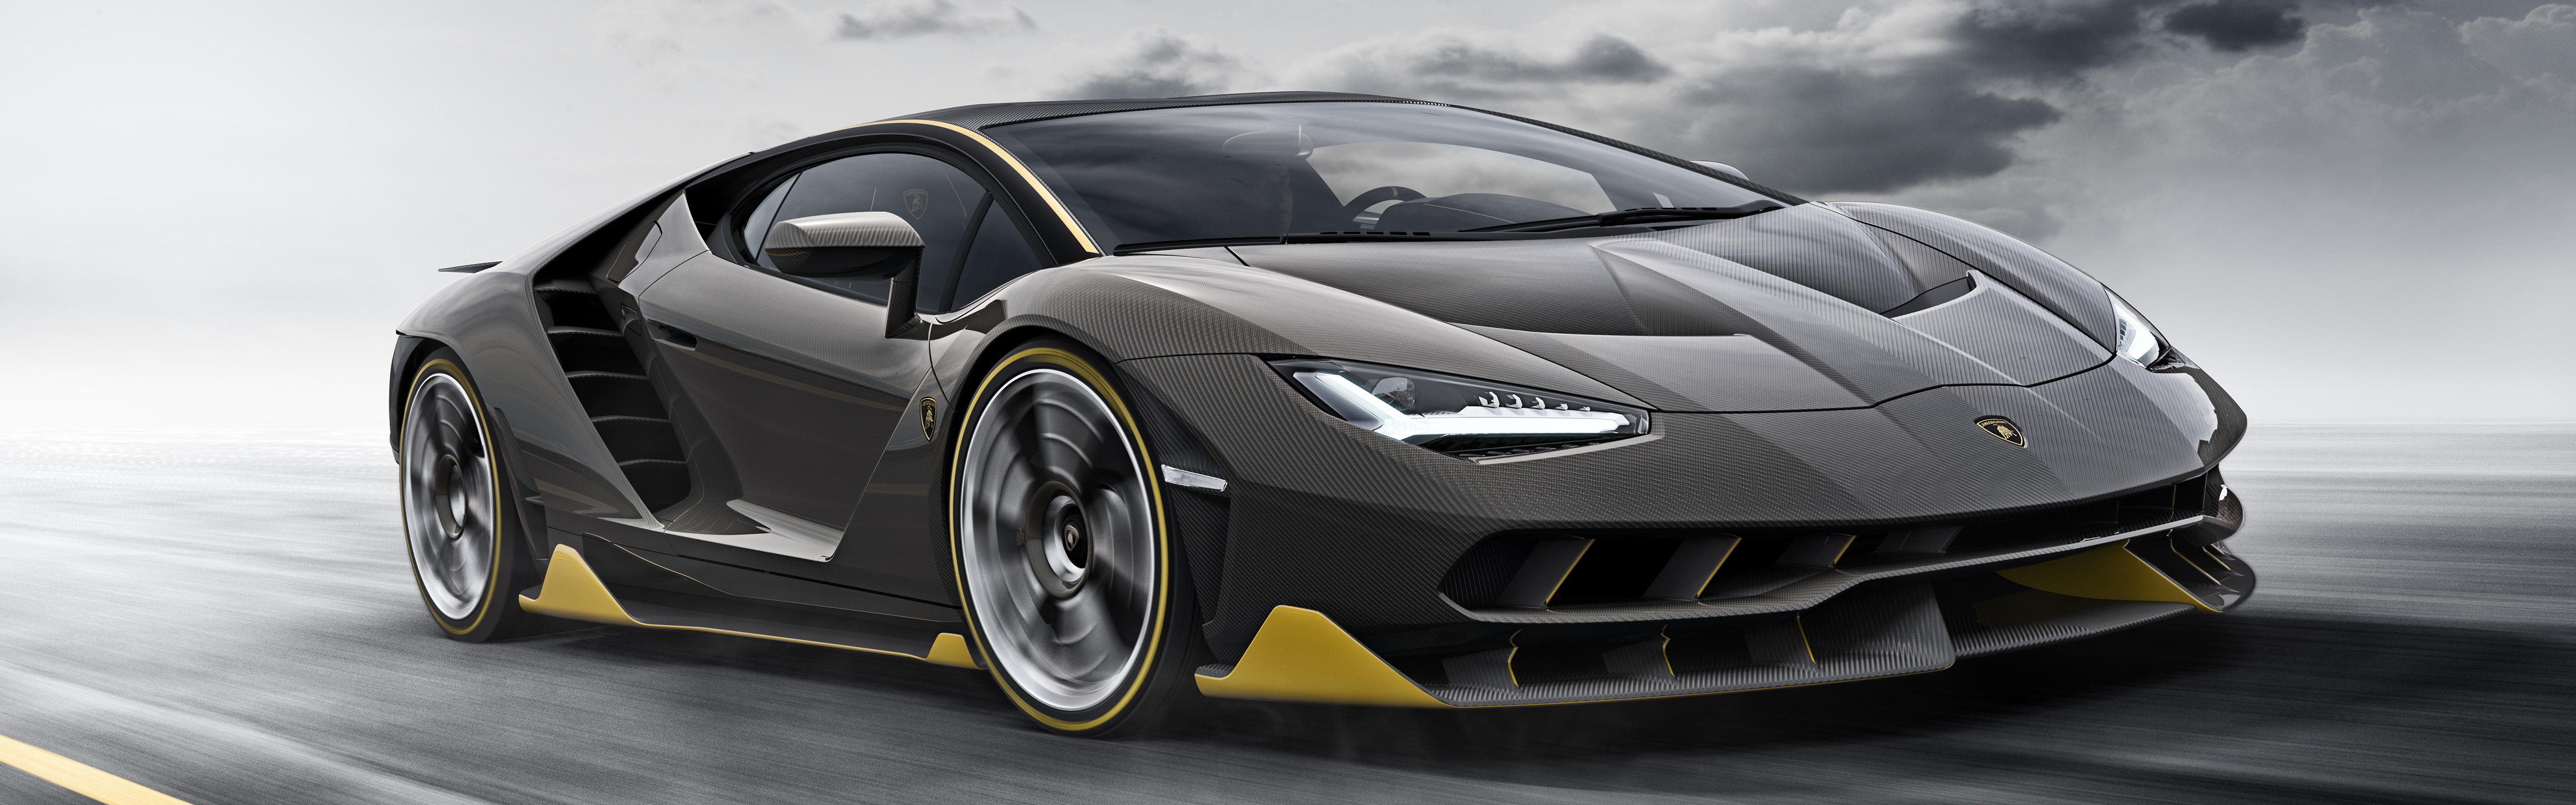 Lamborghini Centenario LP770 4, Car, Vehicle, Super Car, Motion Blur, Dual Monitors, Multiple Display, Road Wallpaper